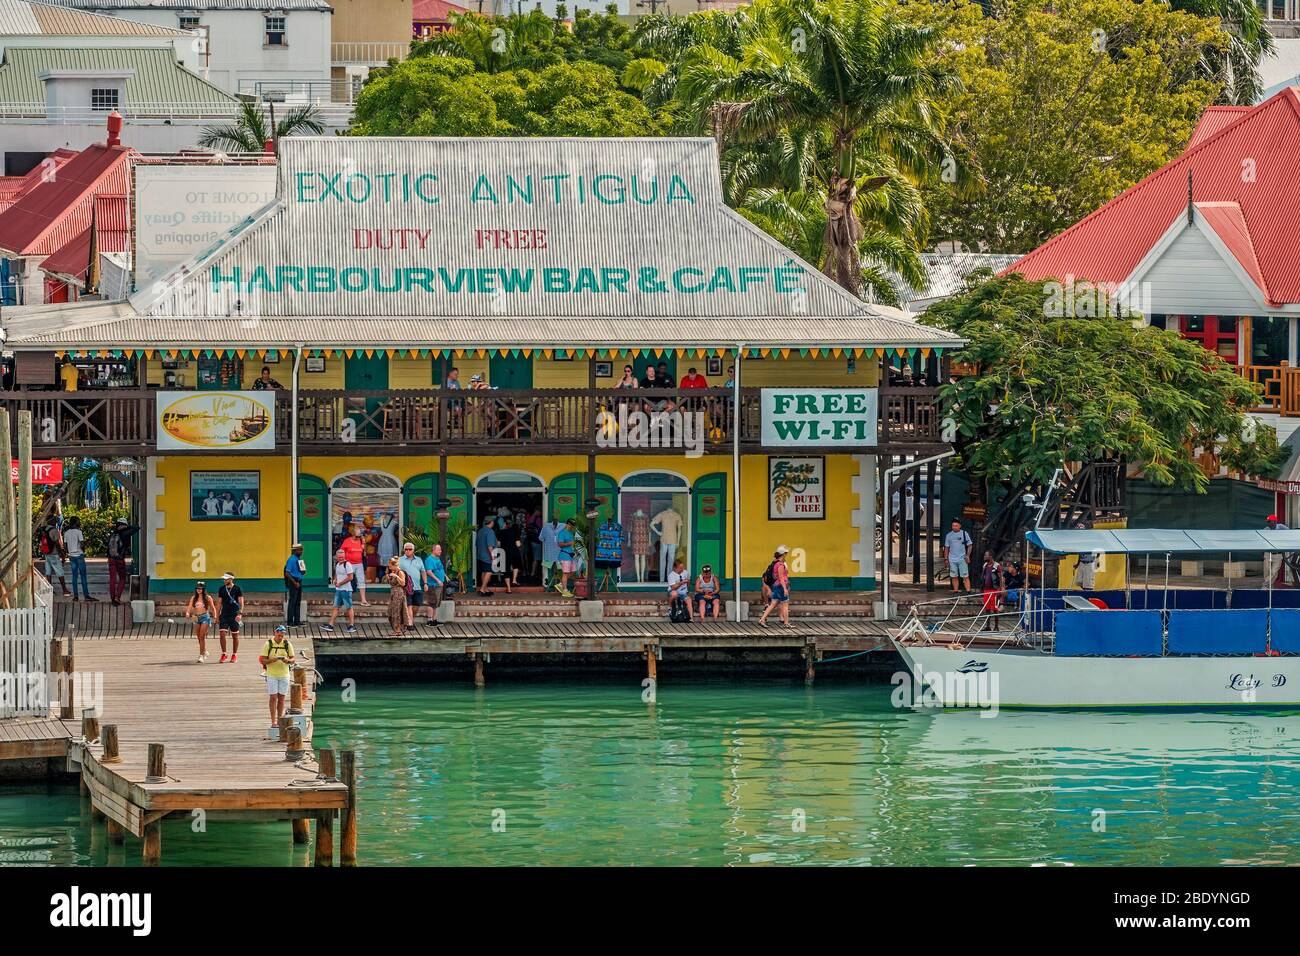 Tiendas Aong the Waterfront, St Johns, Antigua, West Indies Foto de stock